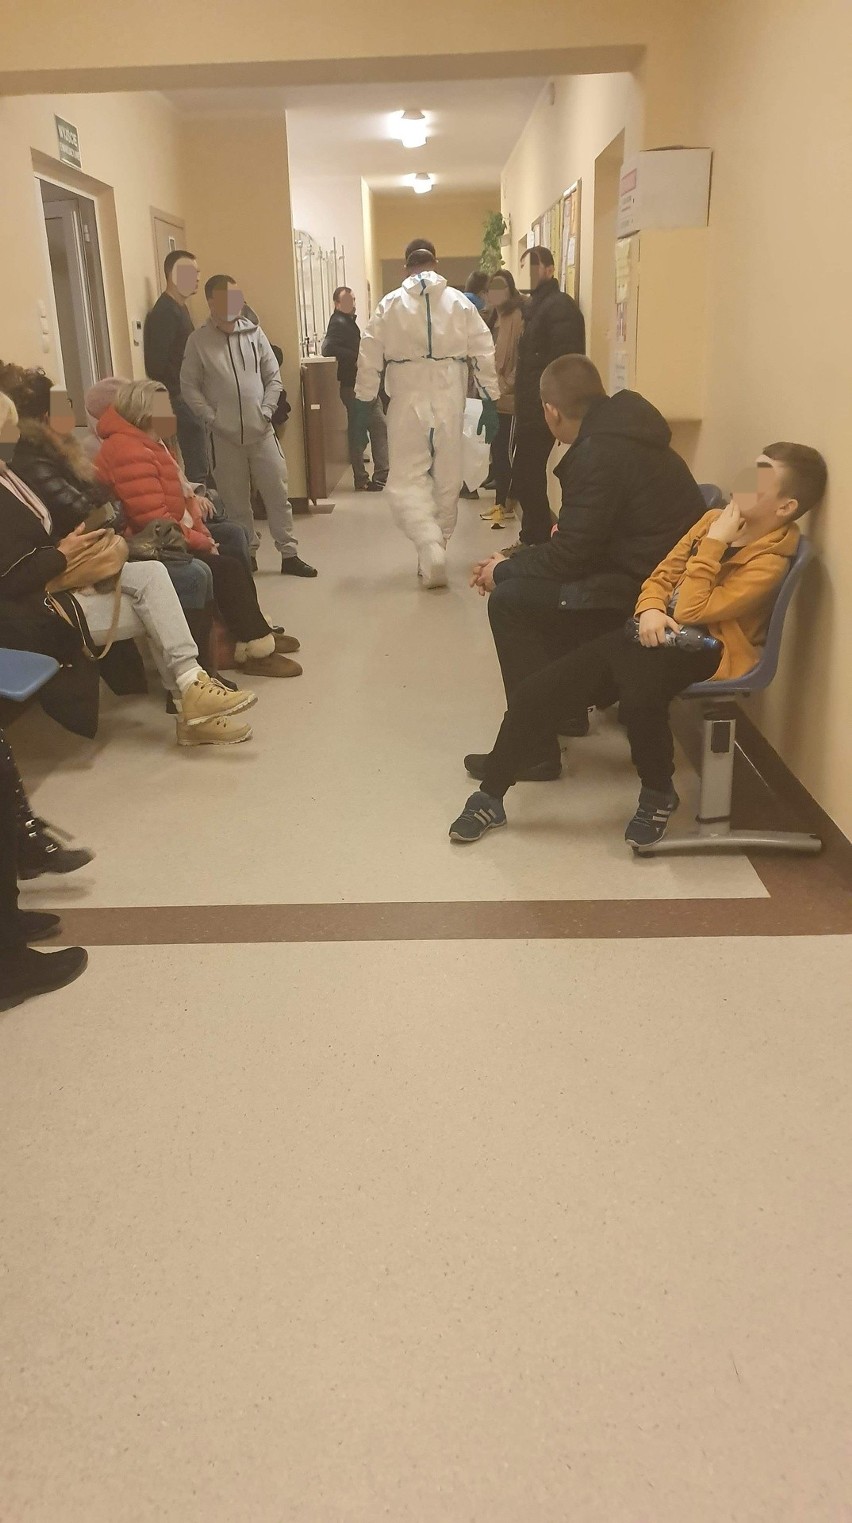 Dziewczynka z podejrzeniem koronawirusa trafiła do szpitala w Gdańsku